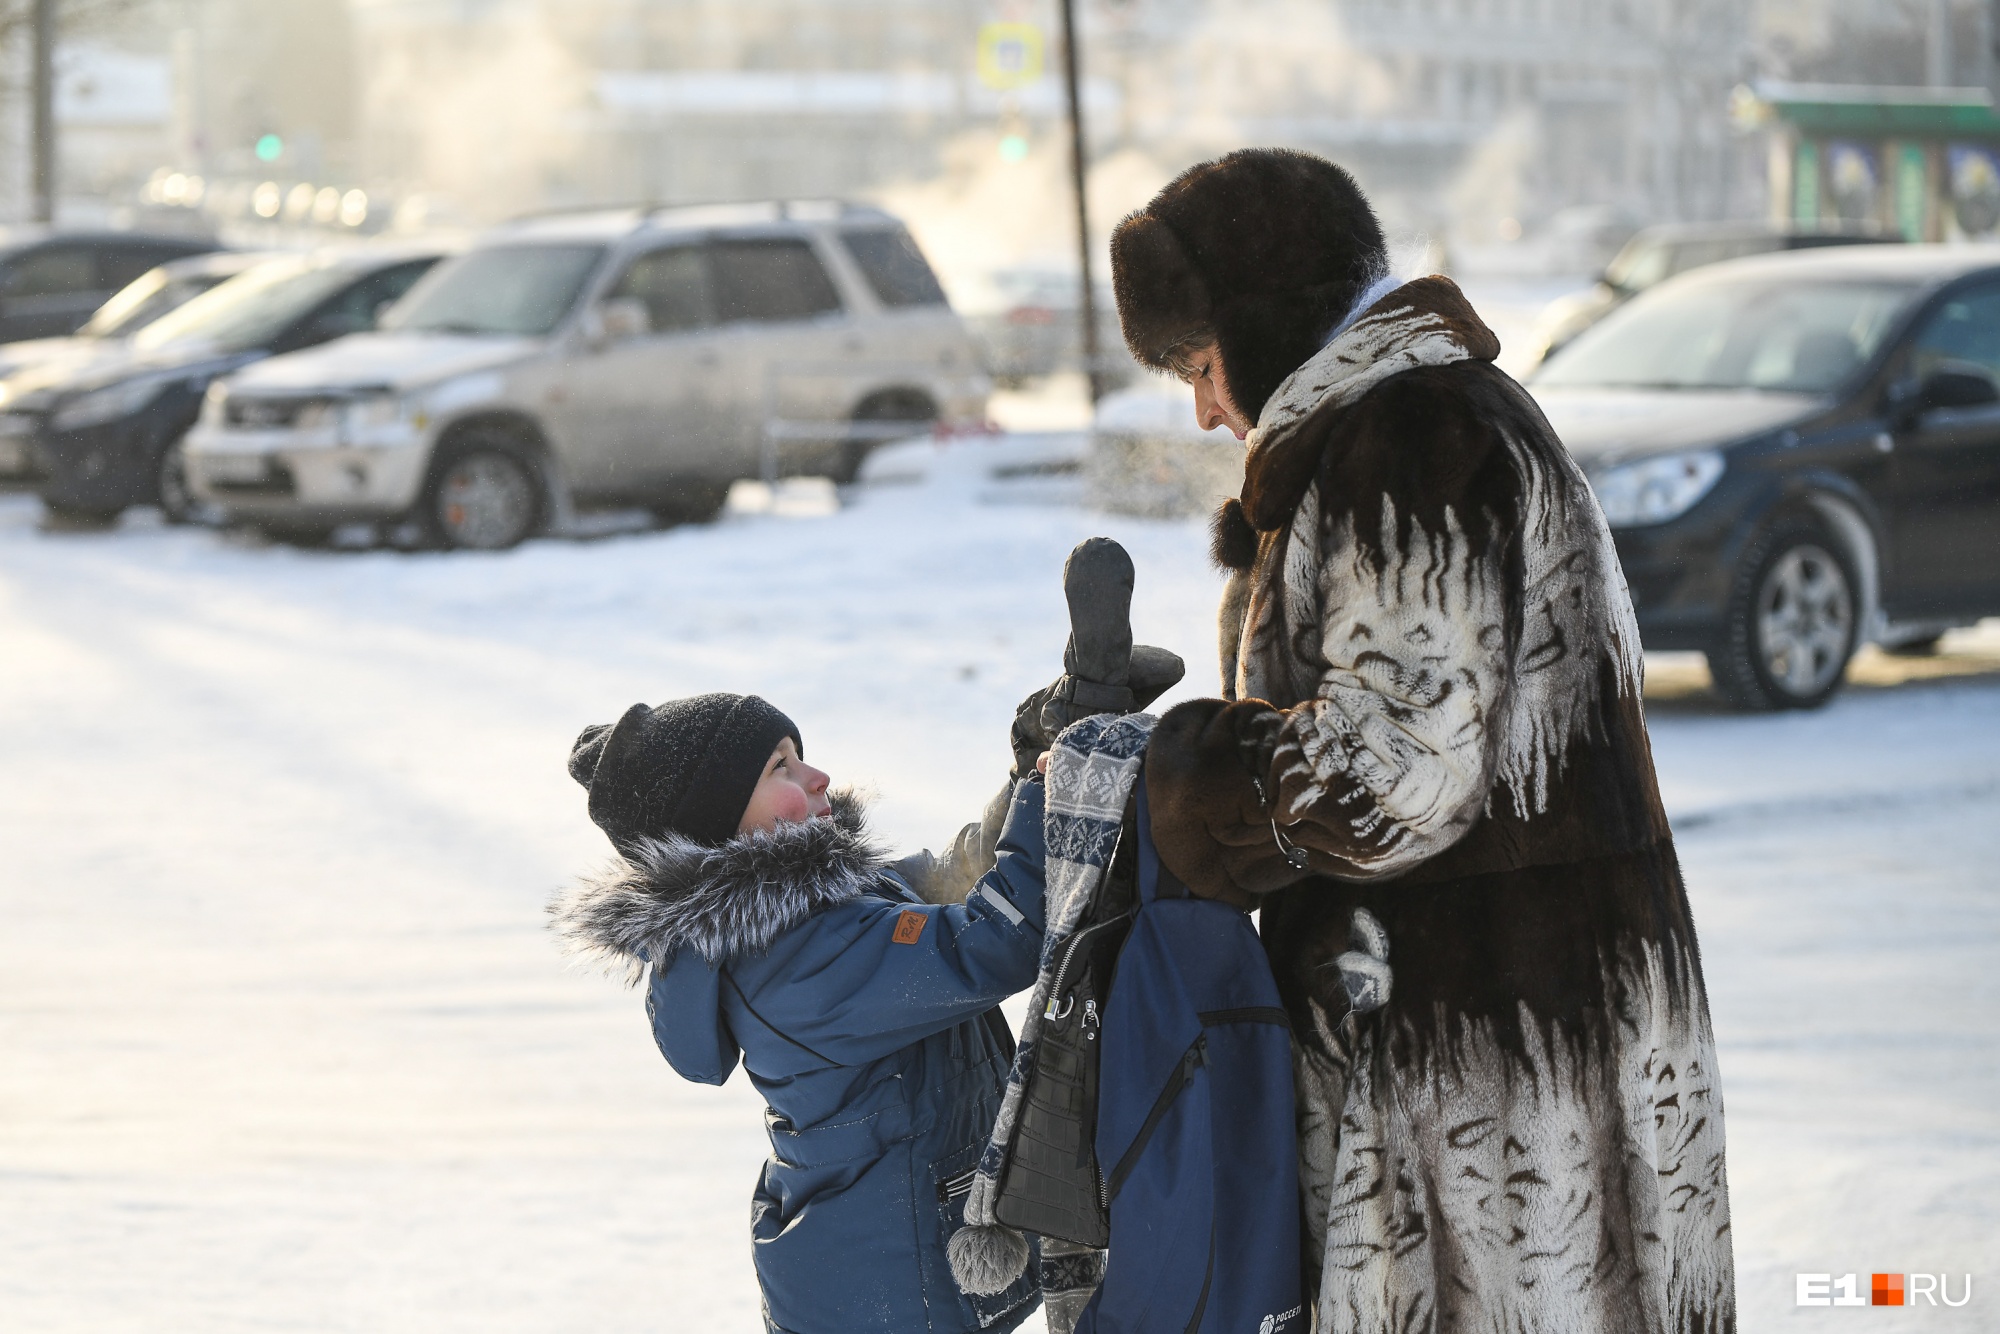 Екатеринбургские родители в чатах разругались из-за того, надо ли вести детей в школу в мороз